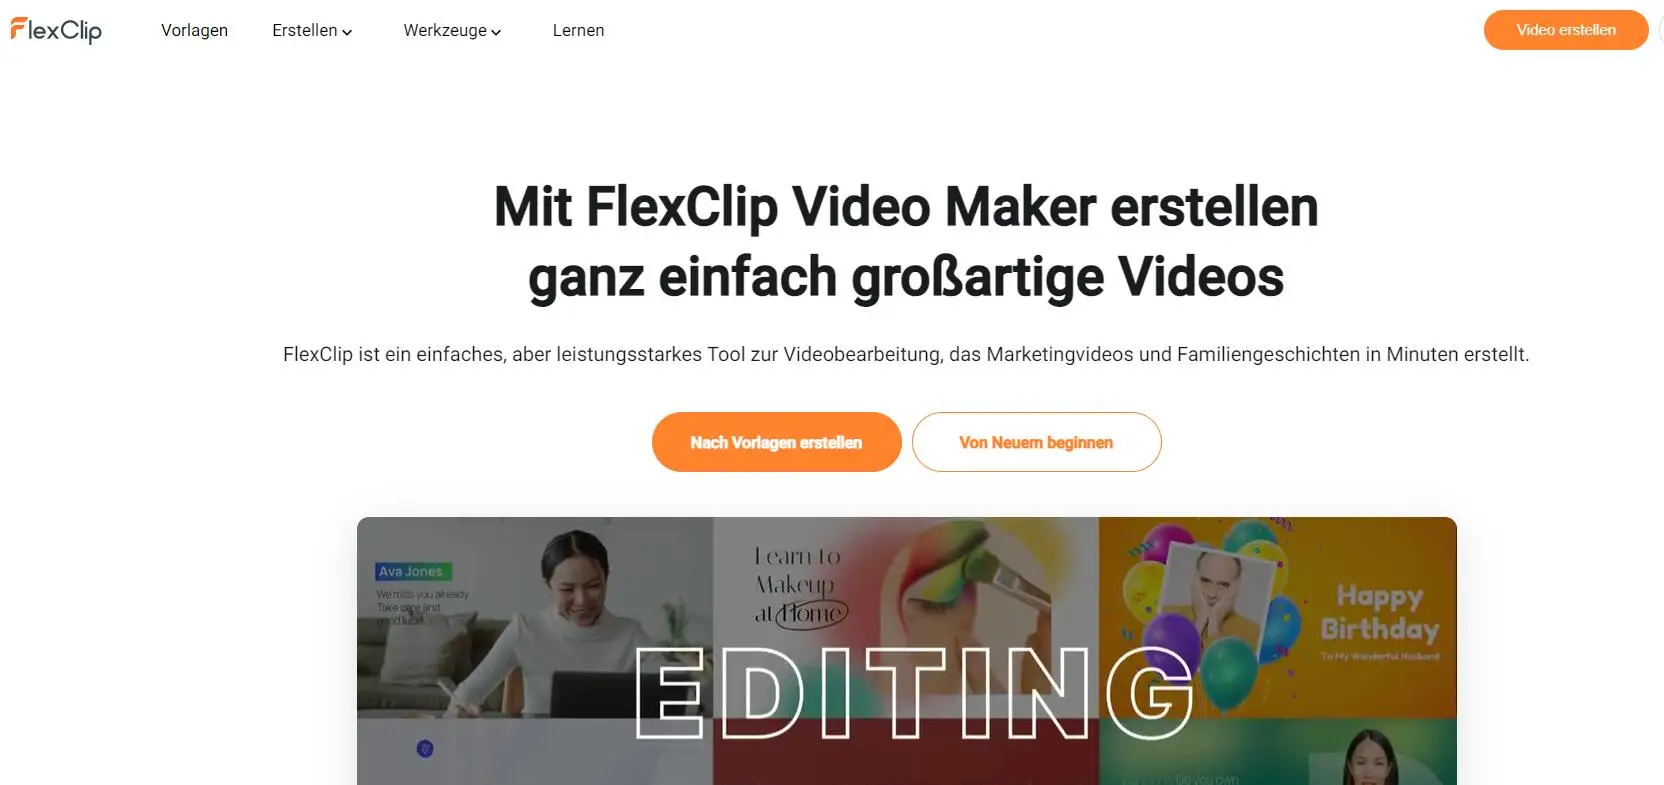 Flexclip-Video-Erstellen-App